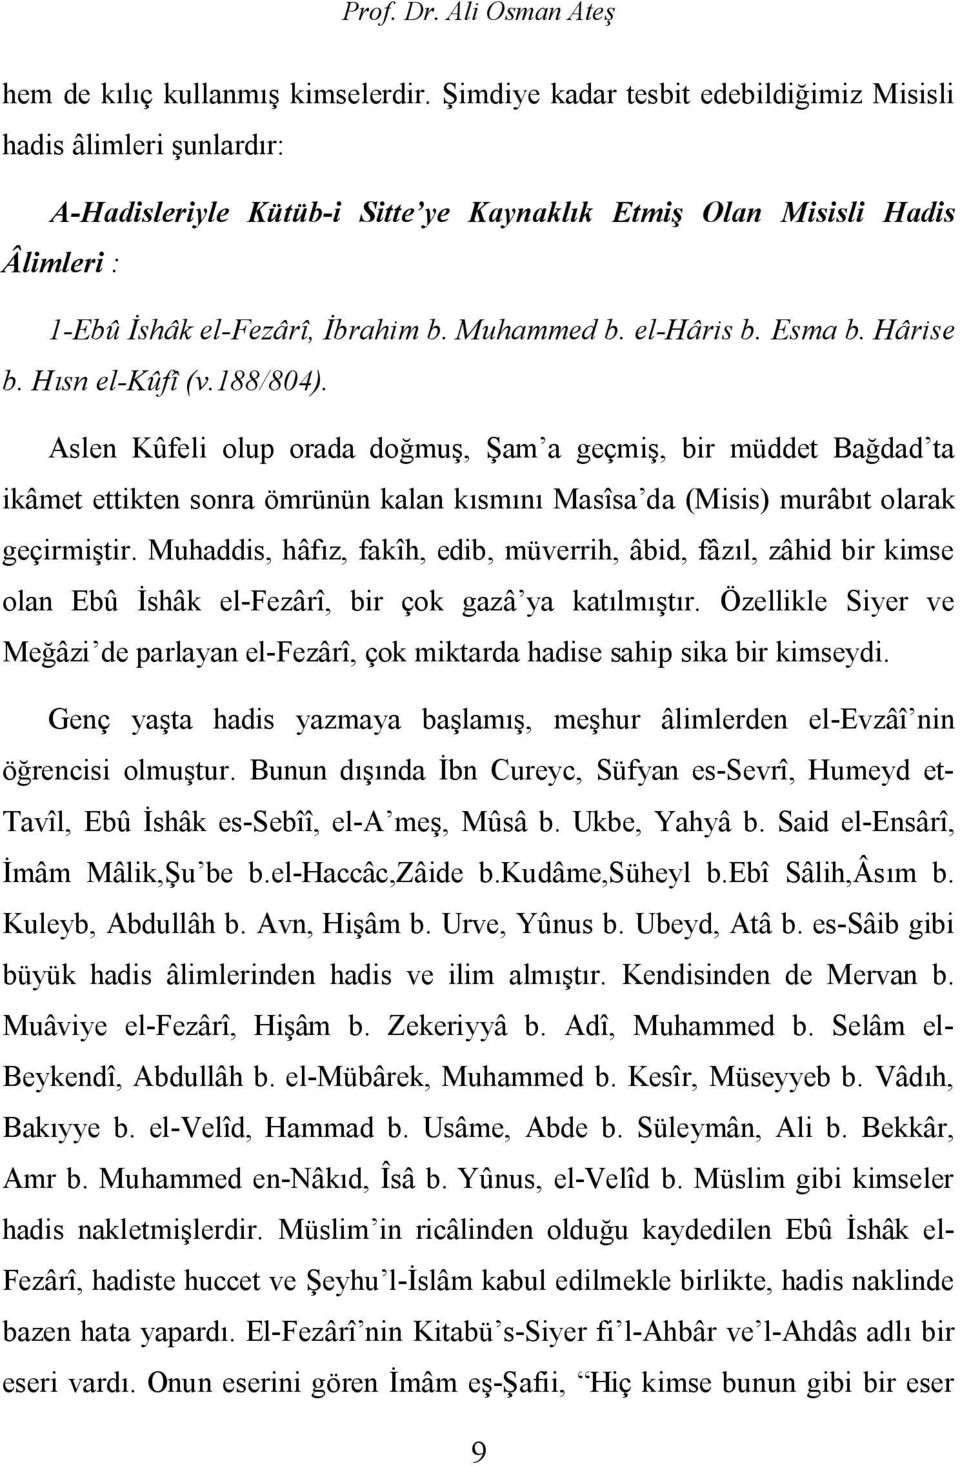 el-hâris b. Esma b. Hârise b. Hısn el-kûfî (v.188/804).